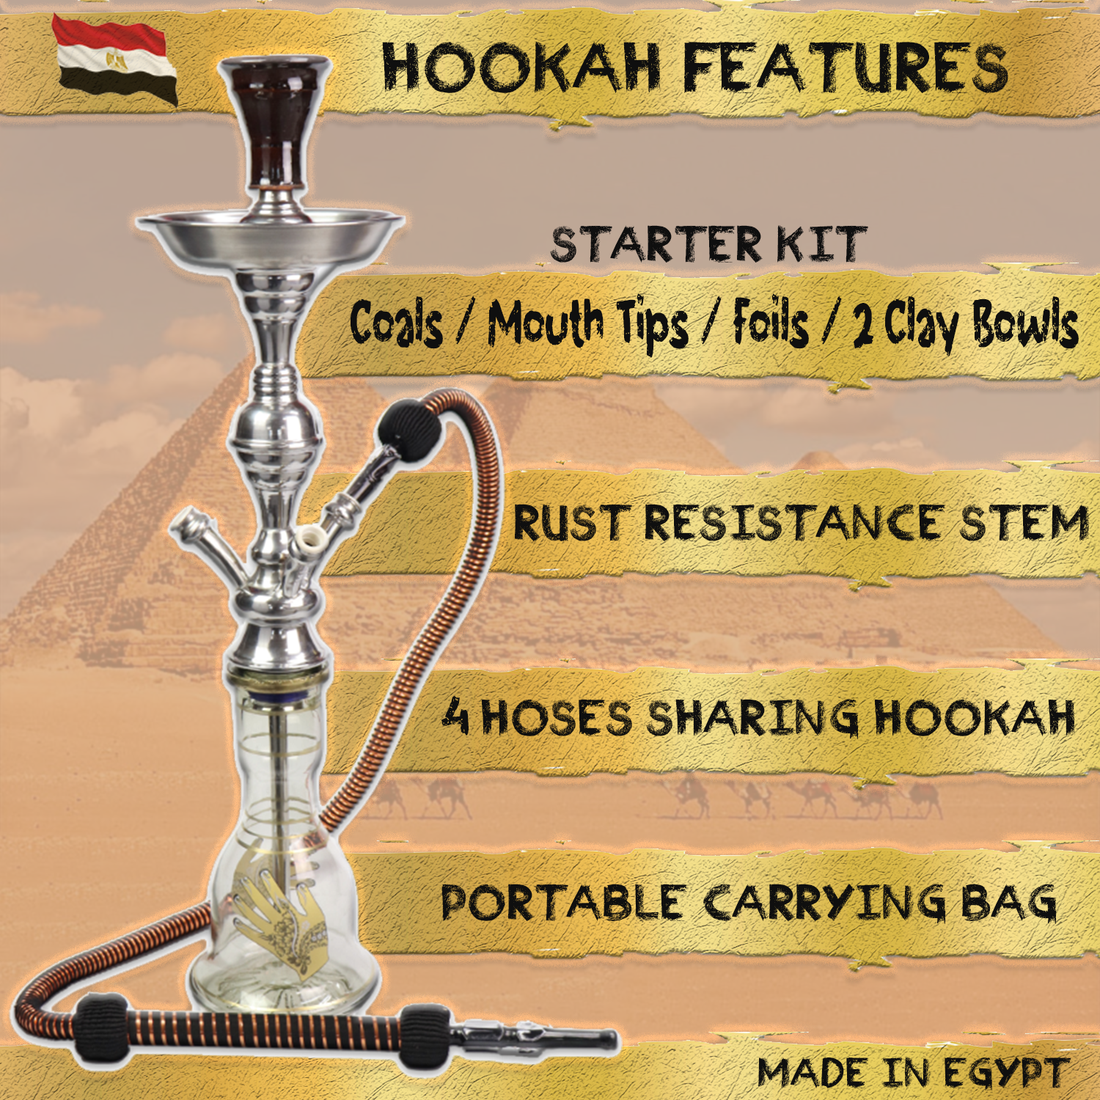 3 Hose Egyptian Sharing Hookah  Complete Set w/ Bag